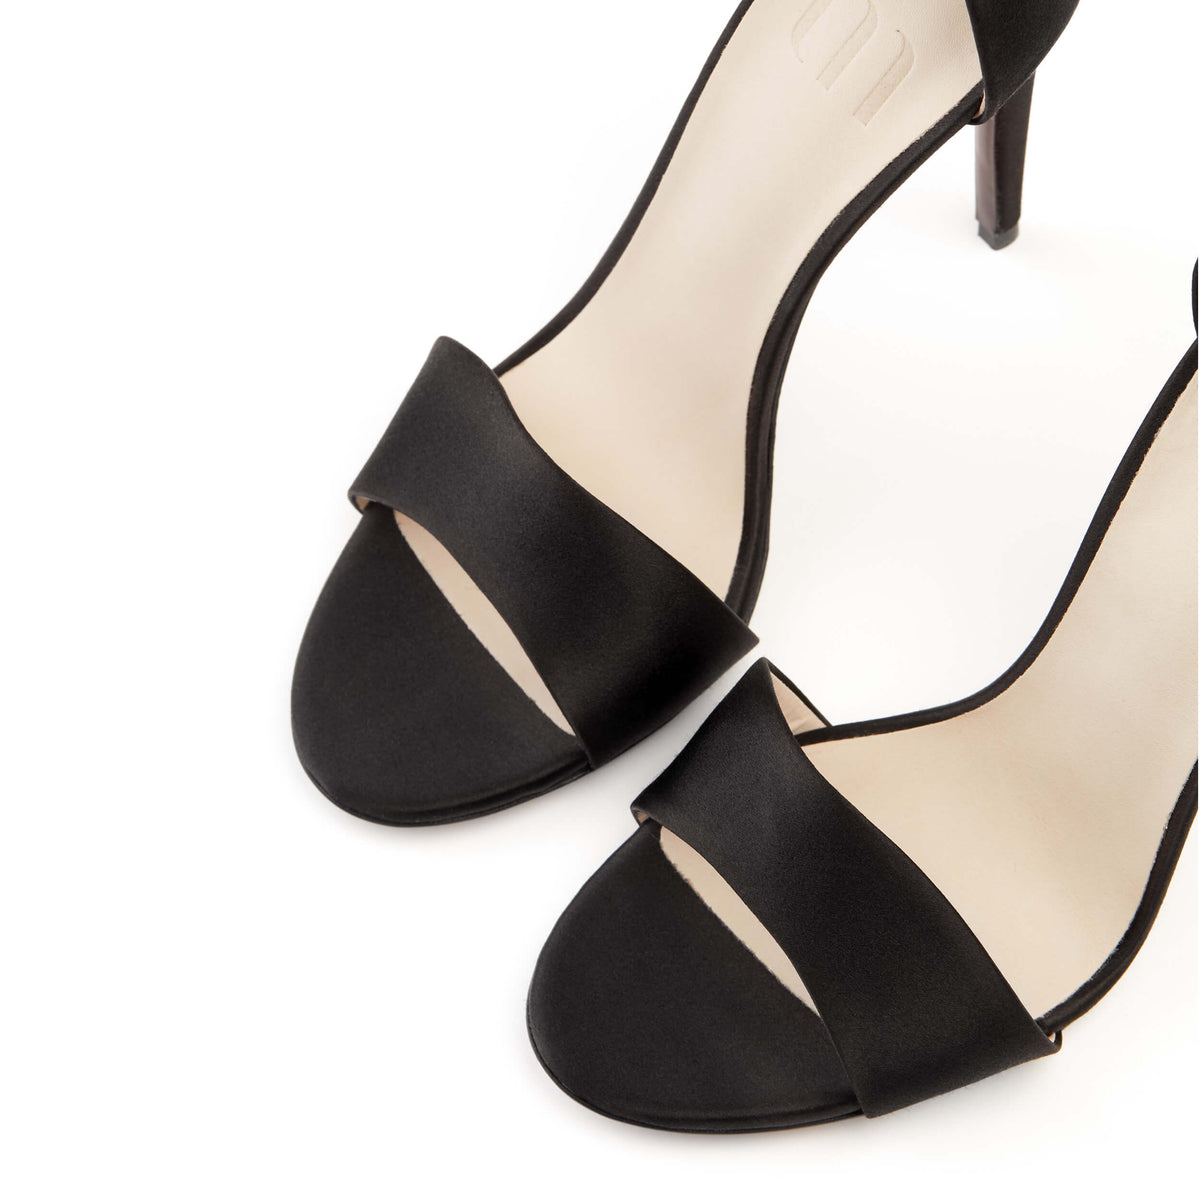 Sandale luxe talon 10,5cm. Féminine et élégante. Edition iconique de la Maison. La Ligne Numérotée 